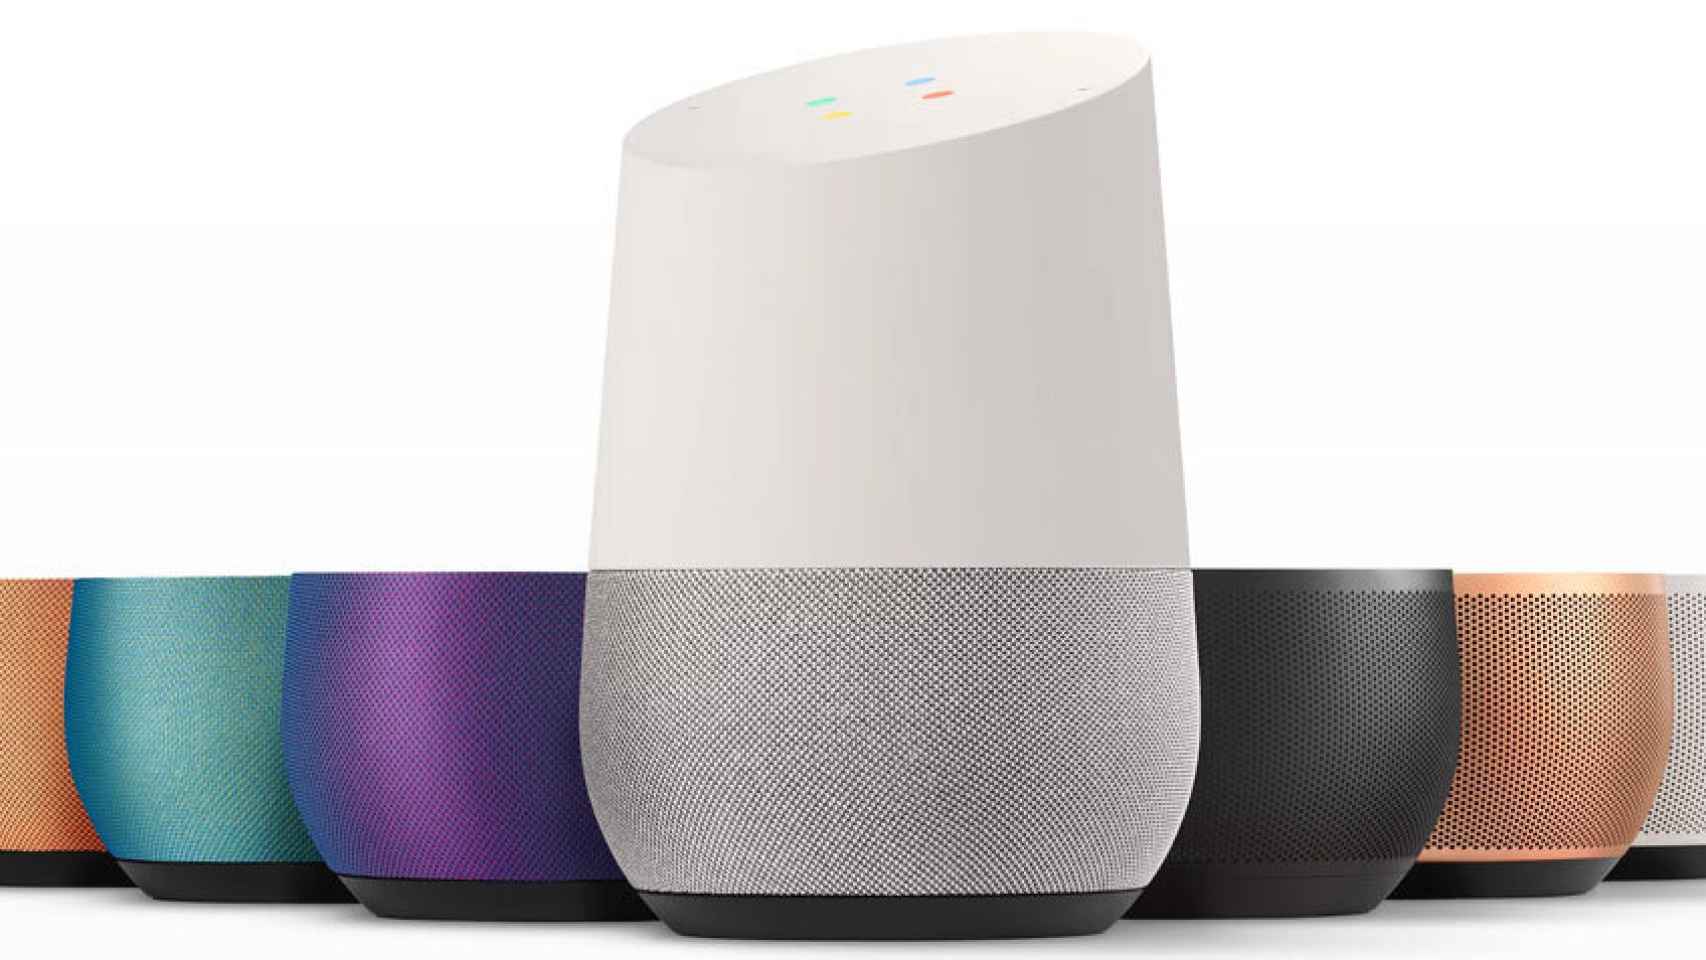 Google avanza hacia el hogar conectado con el asistente de voz Home